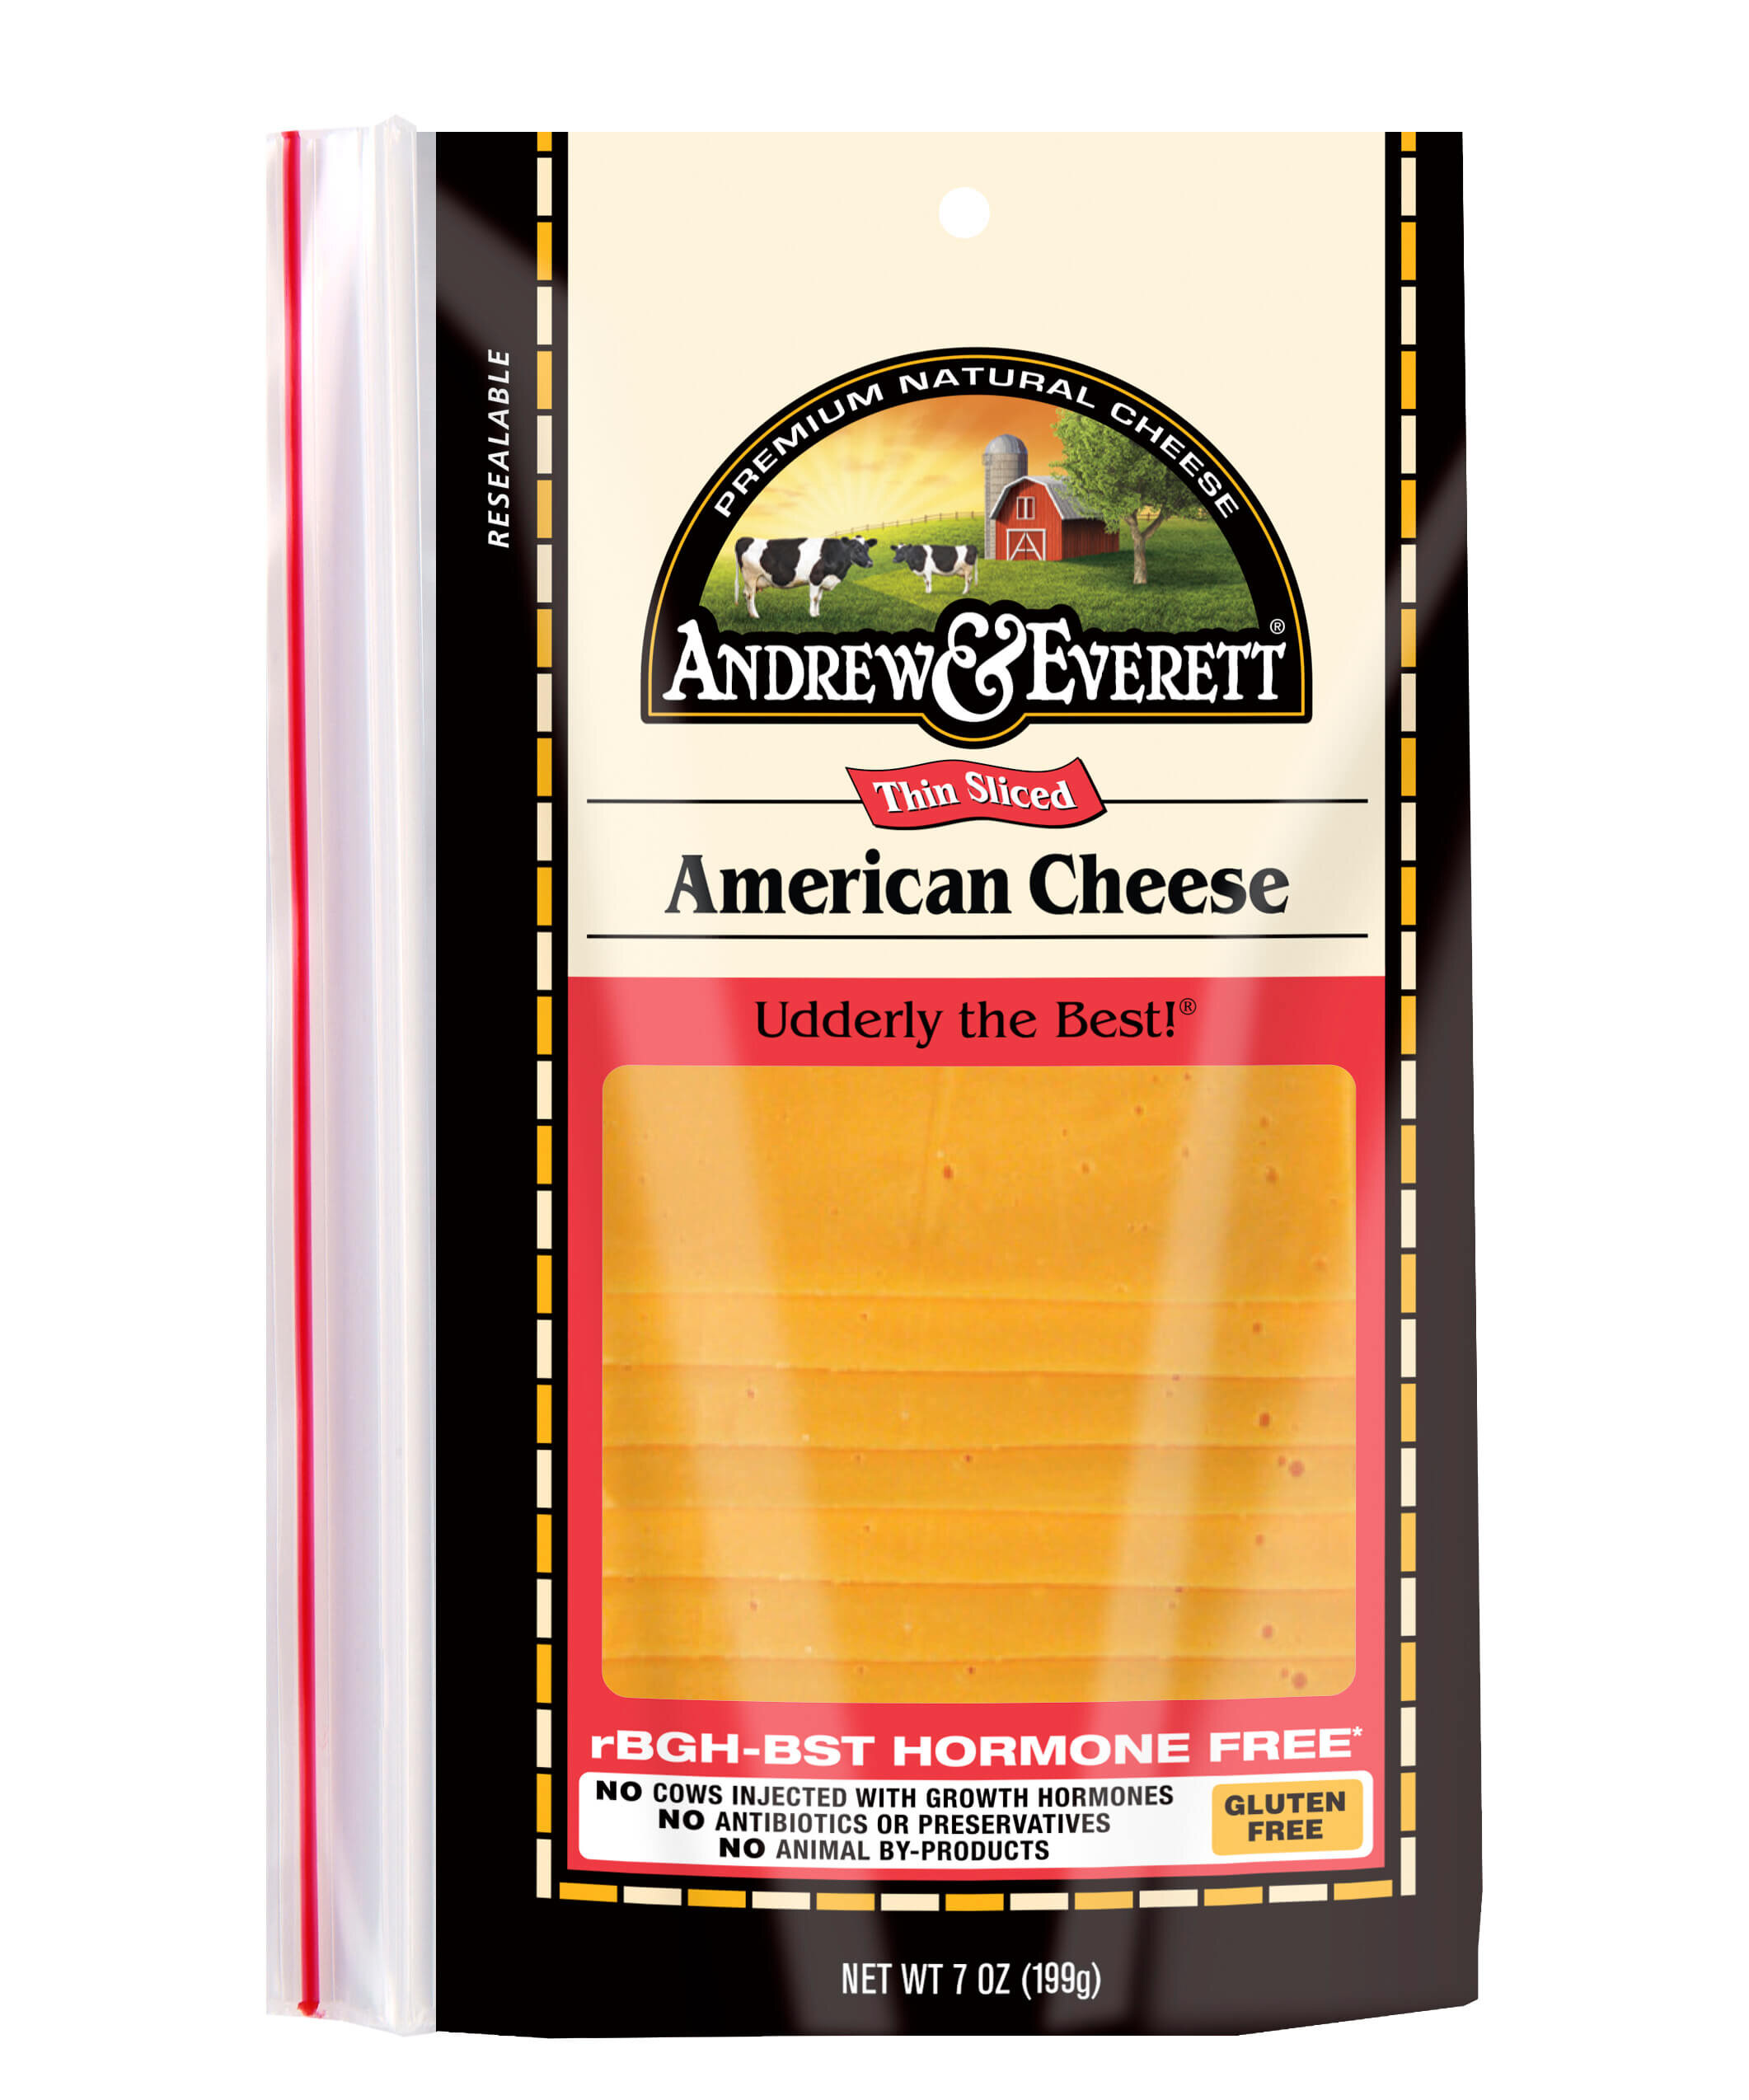 Foto de queso americano cortesía de Andrew &  Everett